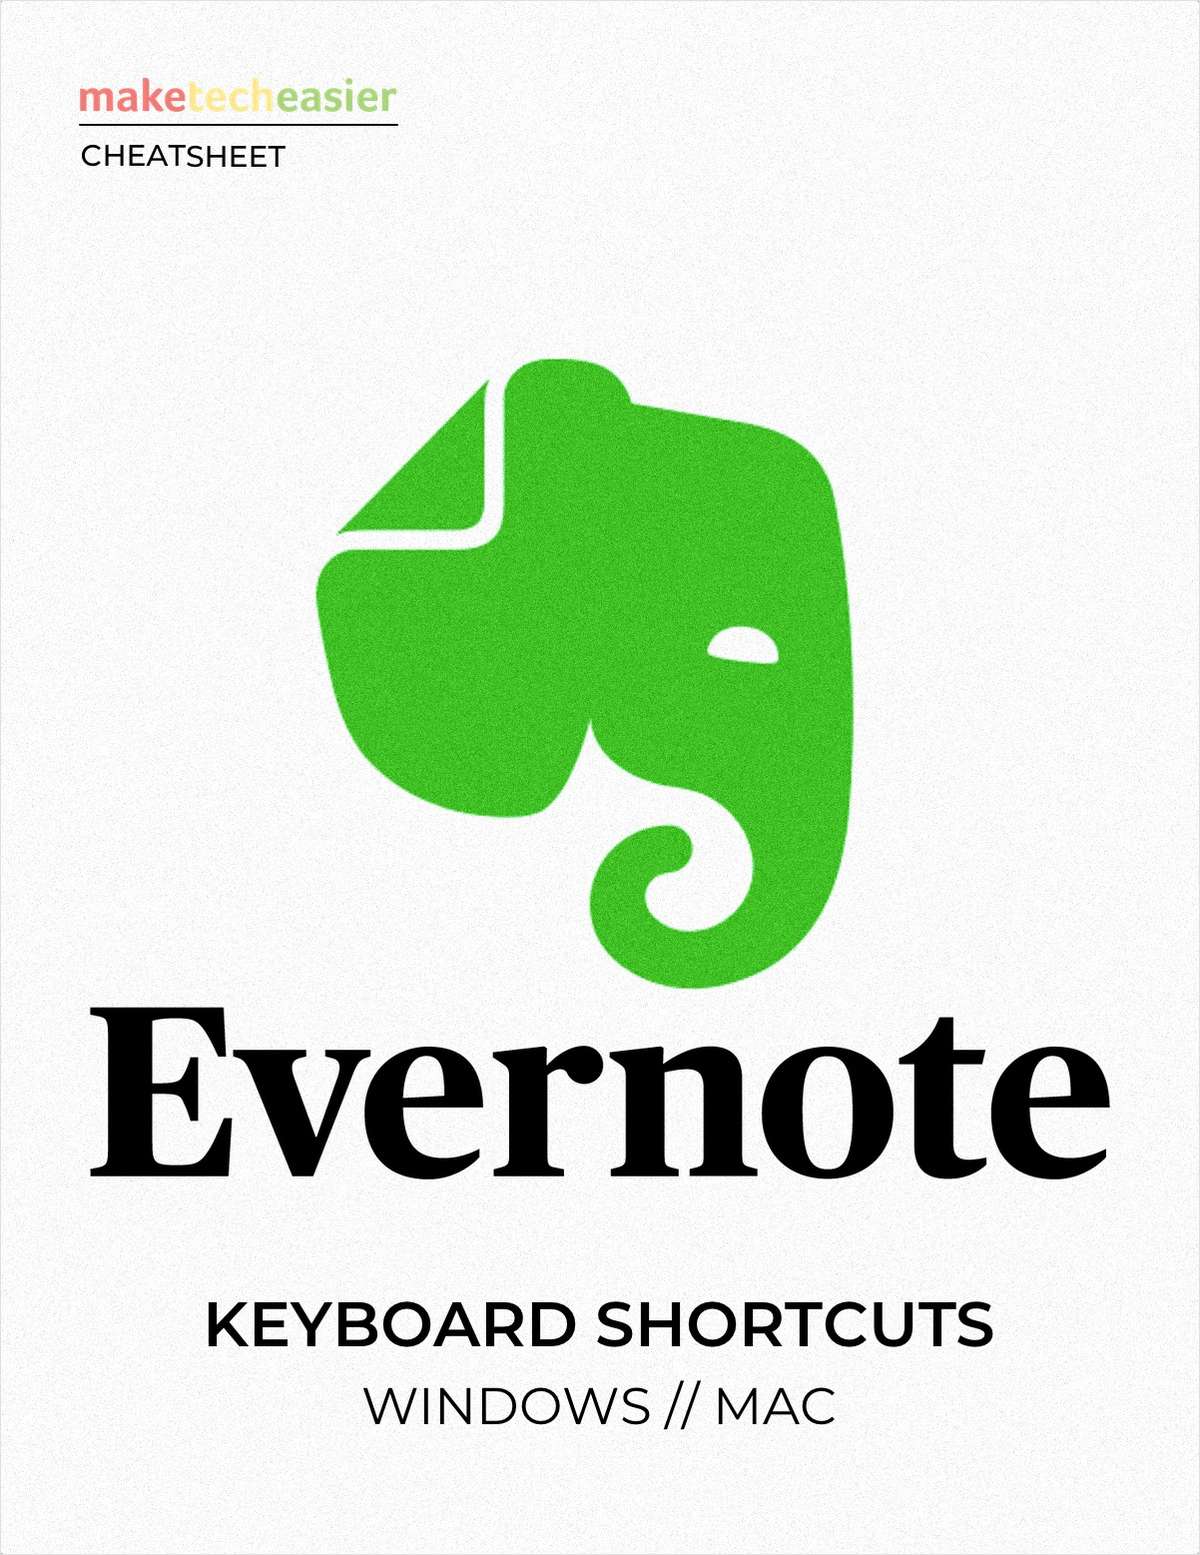 Evernote Keyboard Shortcuts Cheat sheet